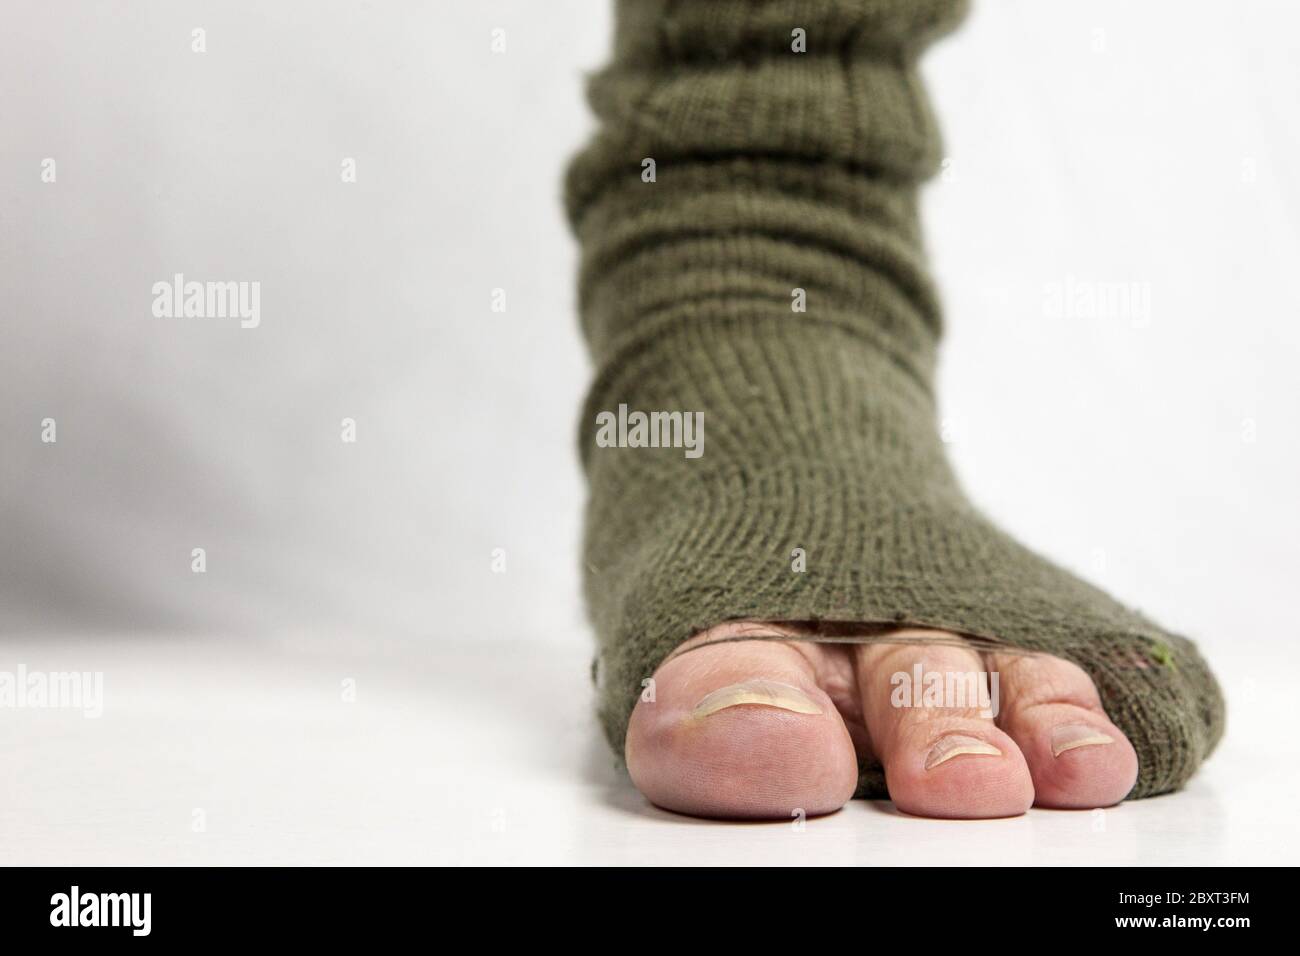 Meias Sólido  Toe socks, Socks, Socks photoshoot